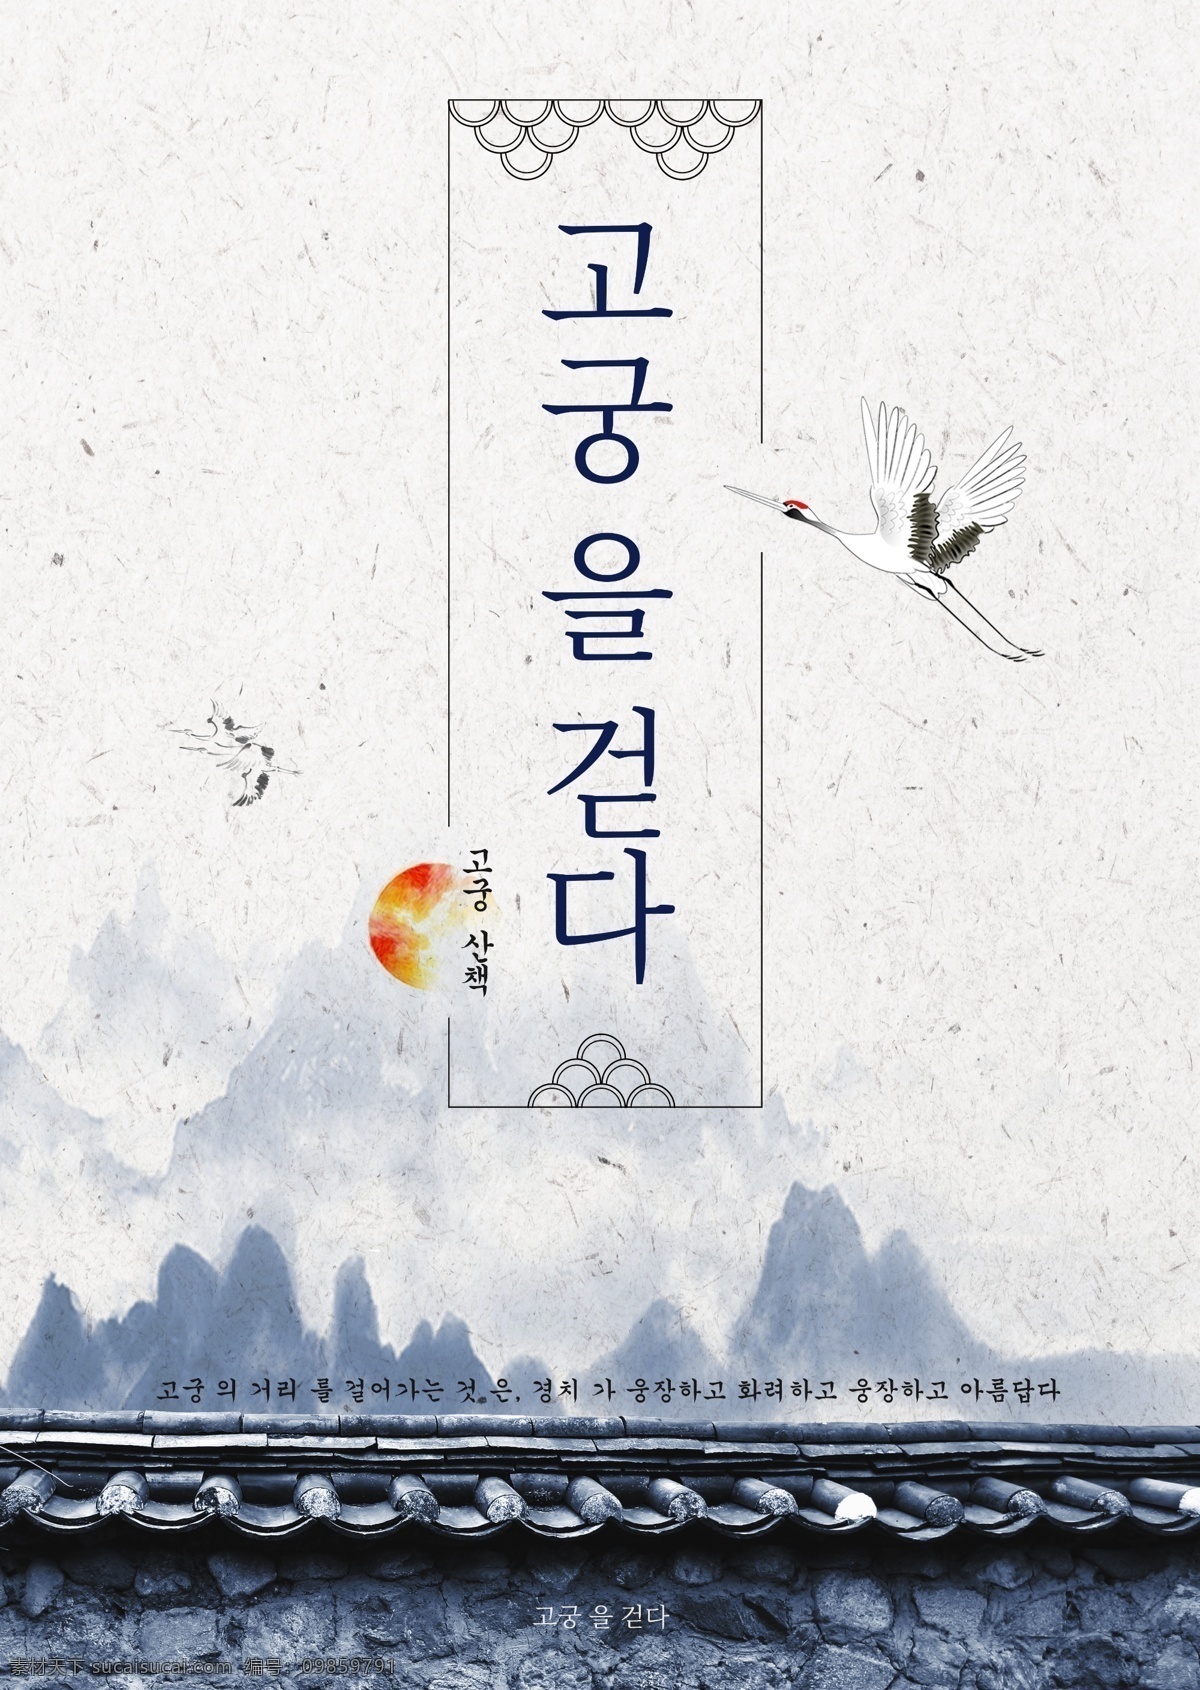 新 蓝色 图案 构造 方法 山 红冠鹤 树 传统的 韩国风格 建造